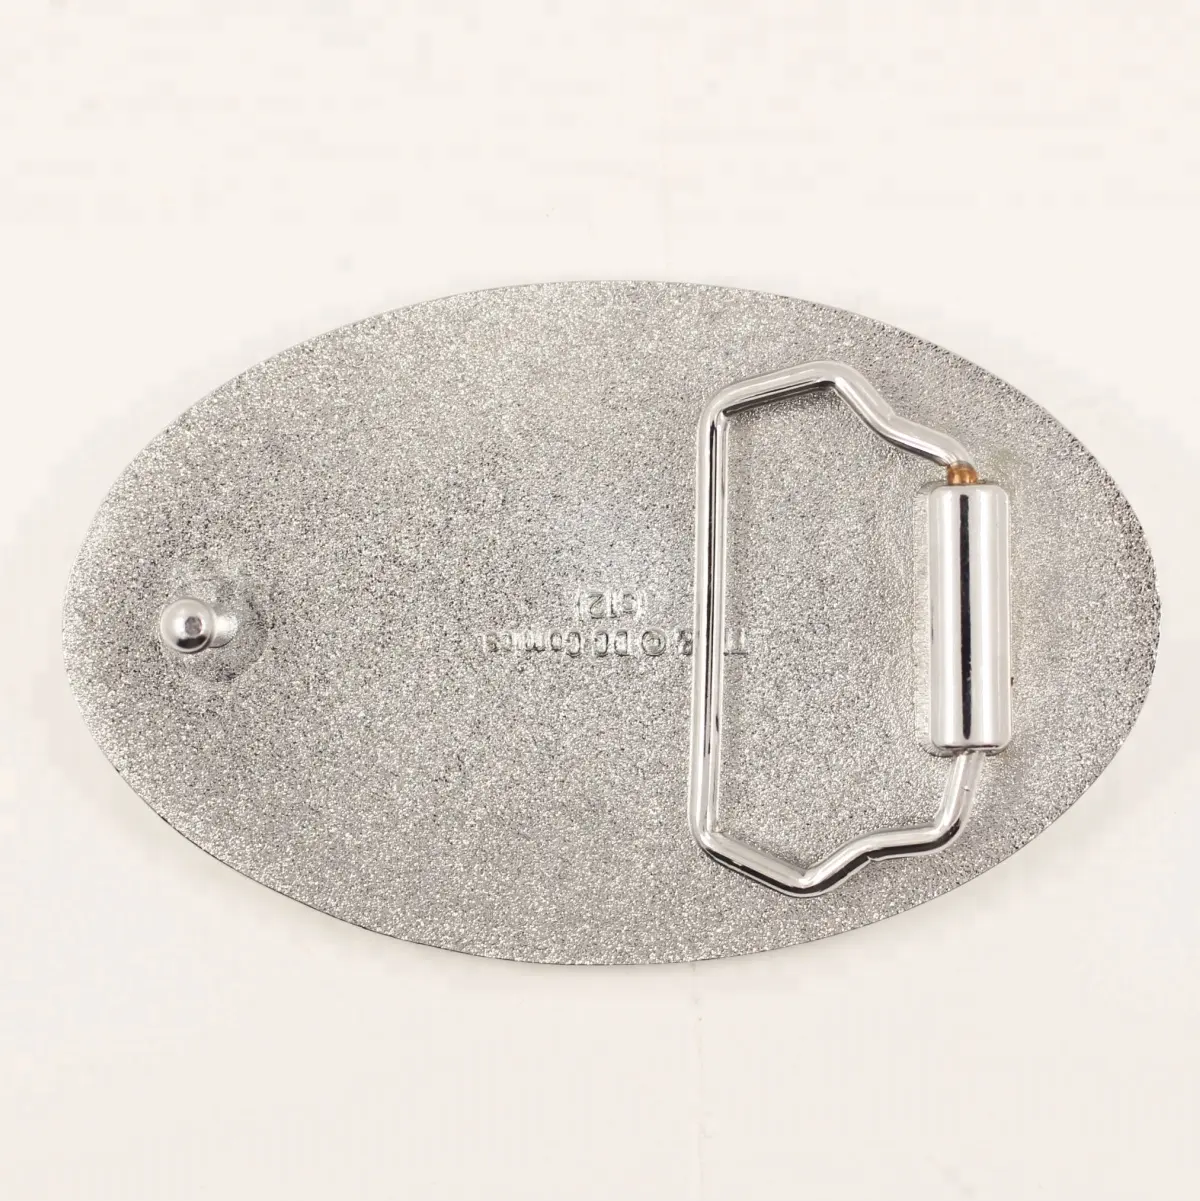 China product custom antieke plaat metalen stempel smeden zinklegering spuitgieten fastener groothandel ambachten 3D OEM logo gesp